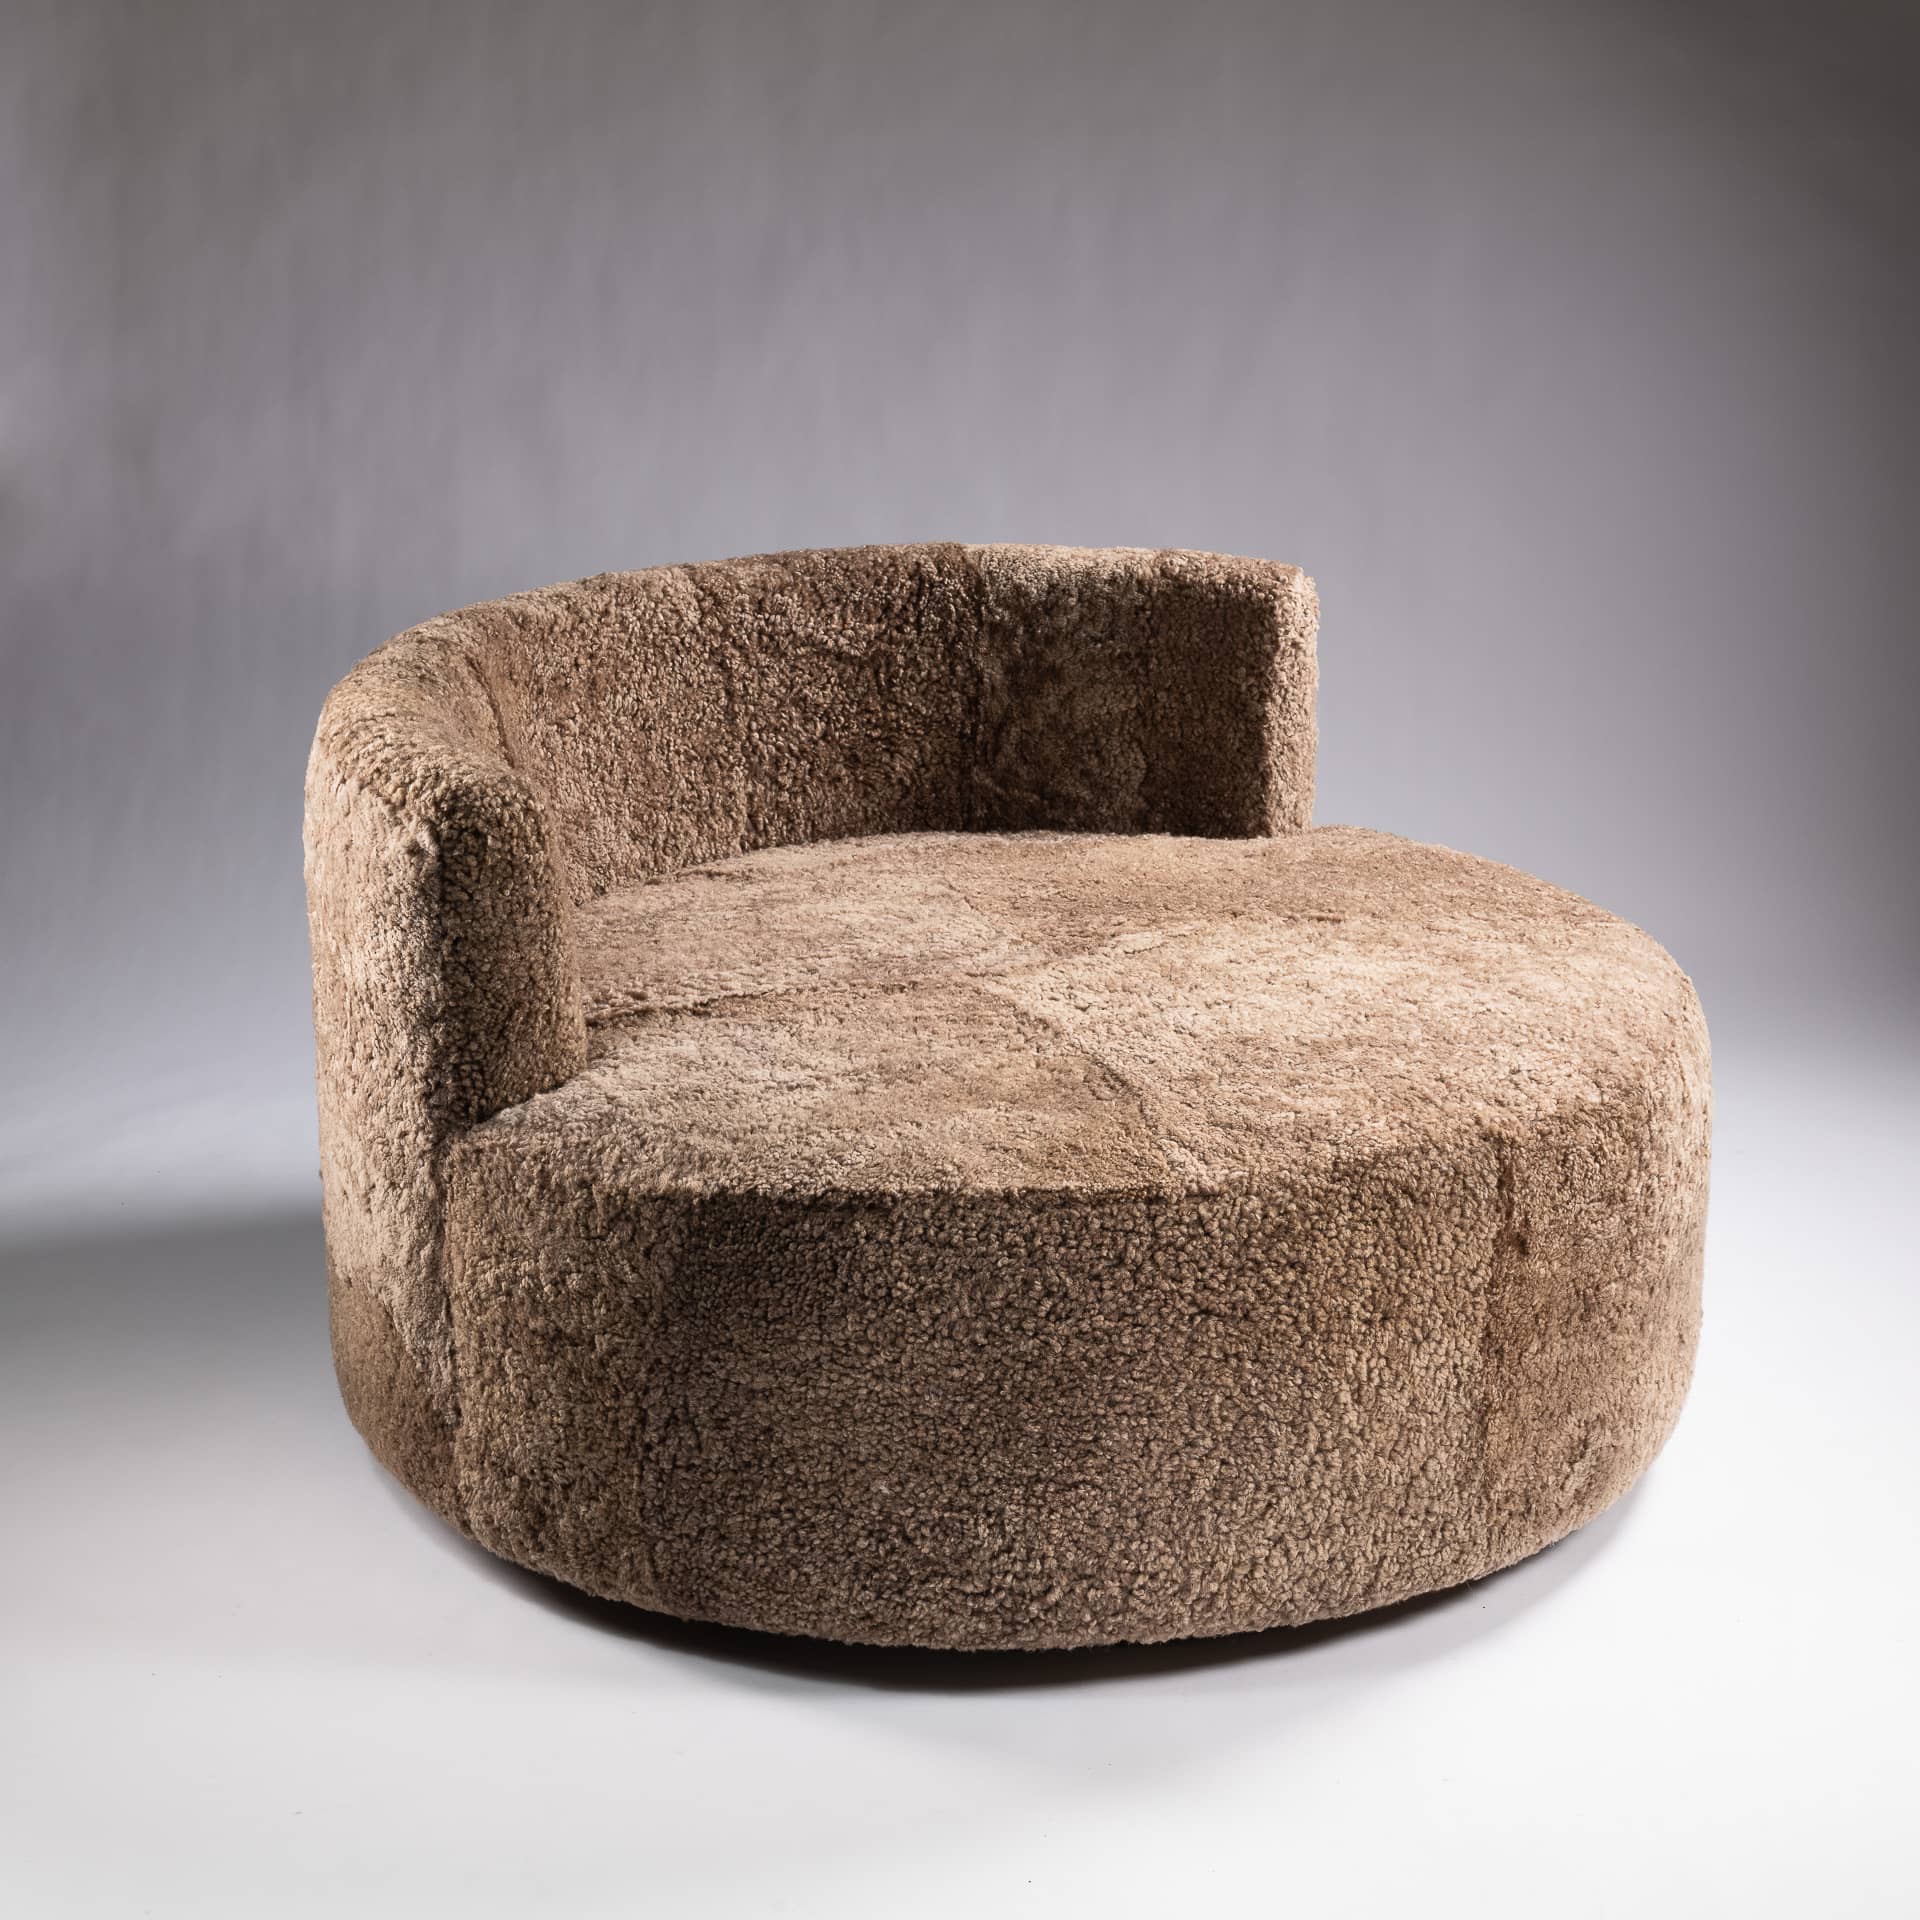 Ce sofa rond sur base pivotante rend hommage au style des années 70 tout en apportant une touche de rêve dans votre espace. Cette banquette incarne la chaleur, la douceur et l'hospitalité, offrant un design fluide et en mouvement.